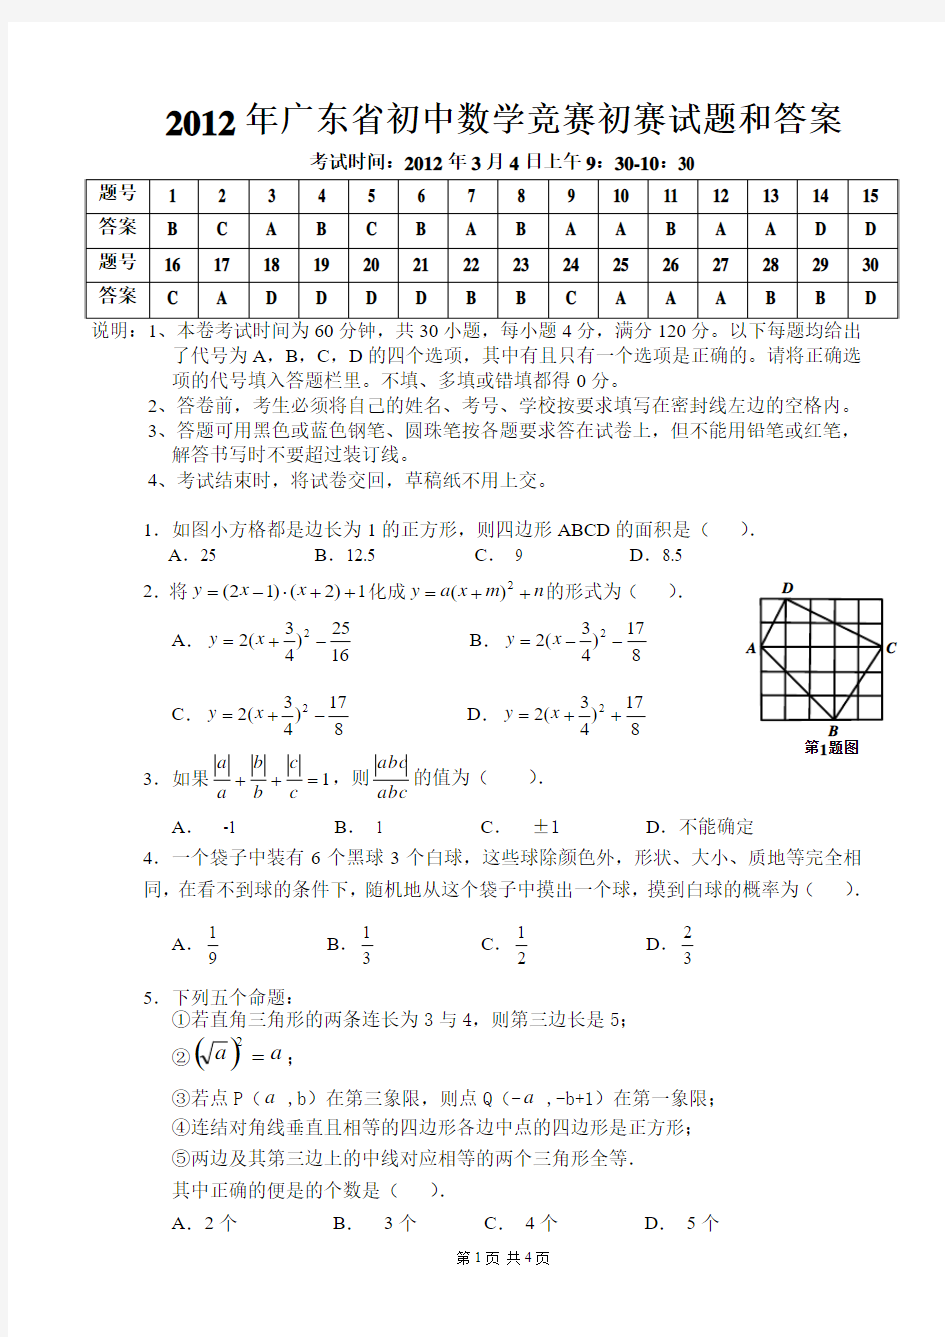 2012年广东省初中数学竞赛初赛试题和答案